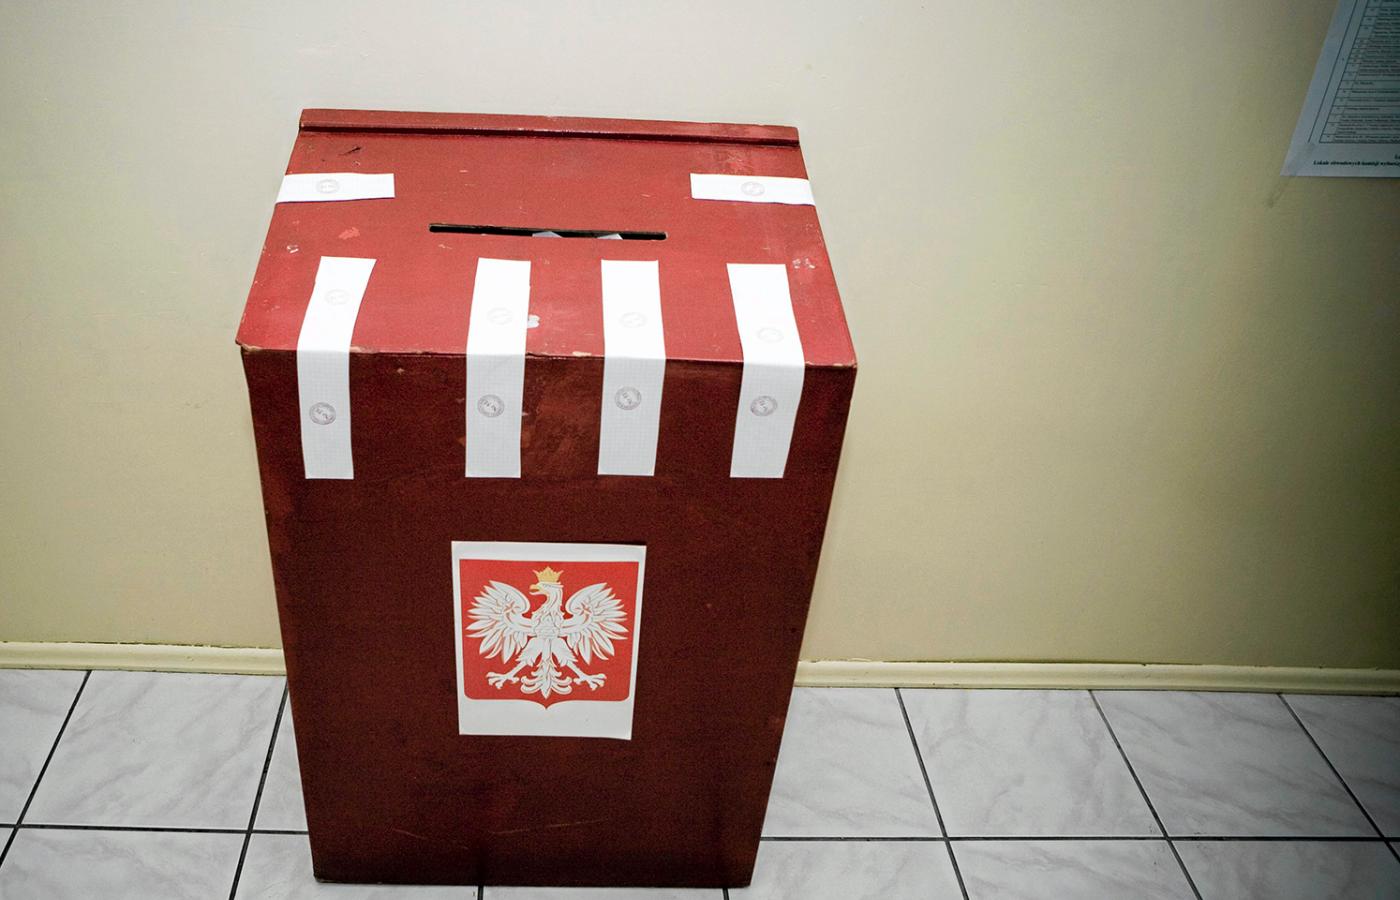 Kilka pomysłów które pomogłyby wygrać wybory samorządowe w województwie Kujawsko-Pomorskim